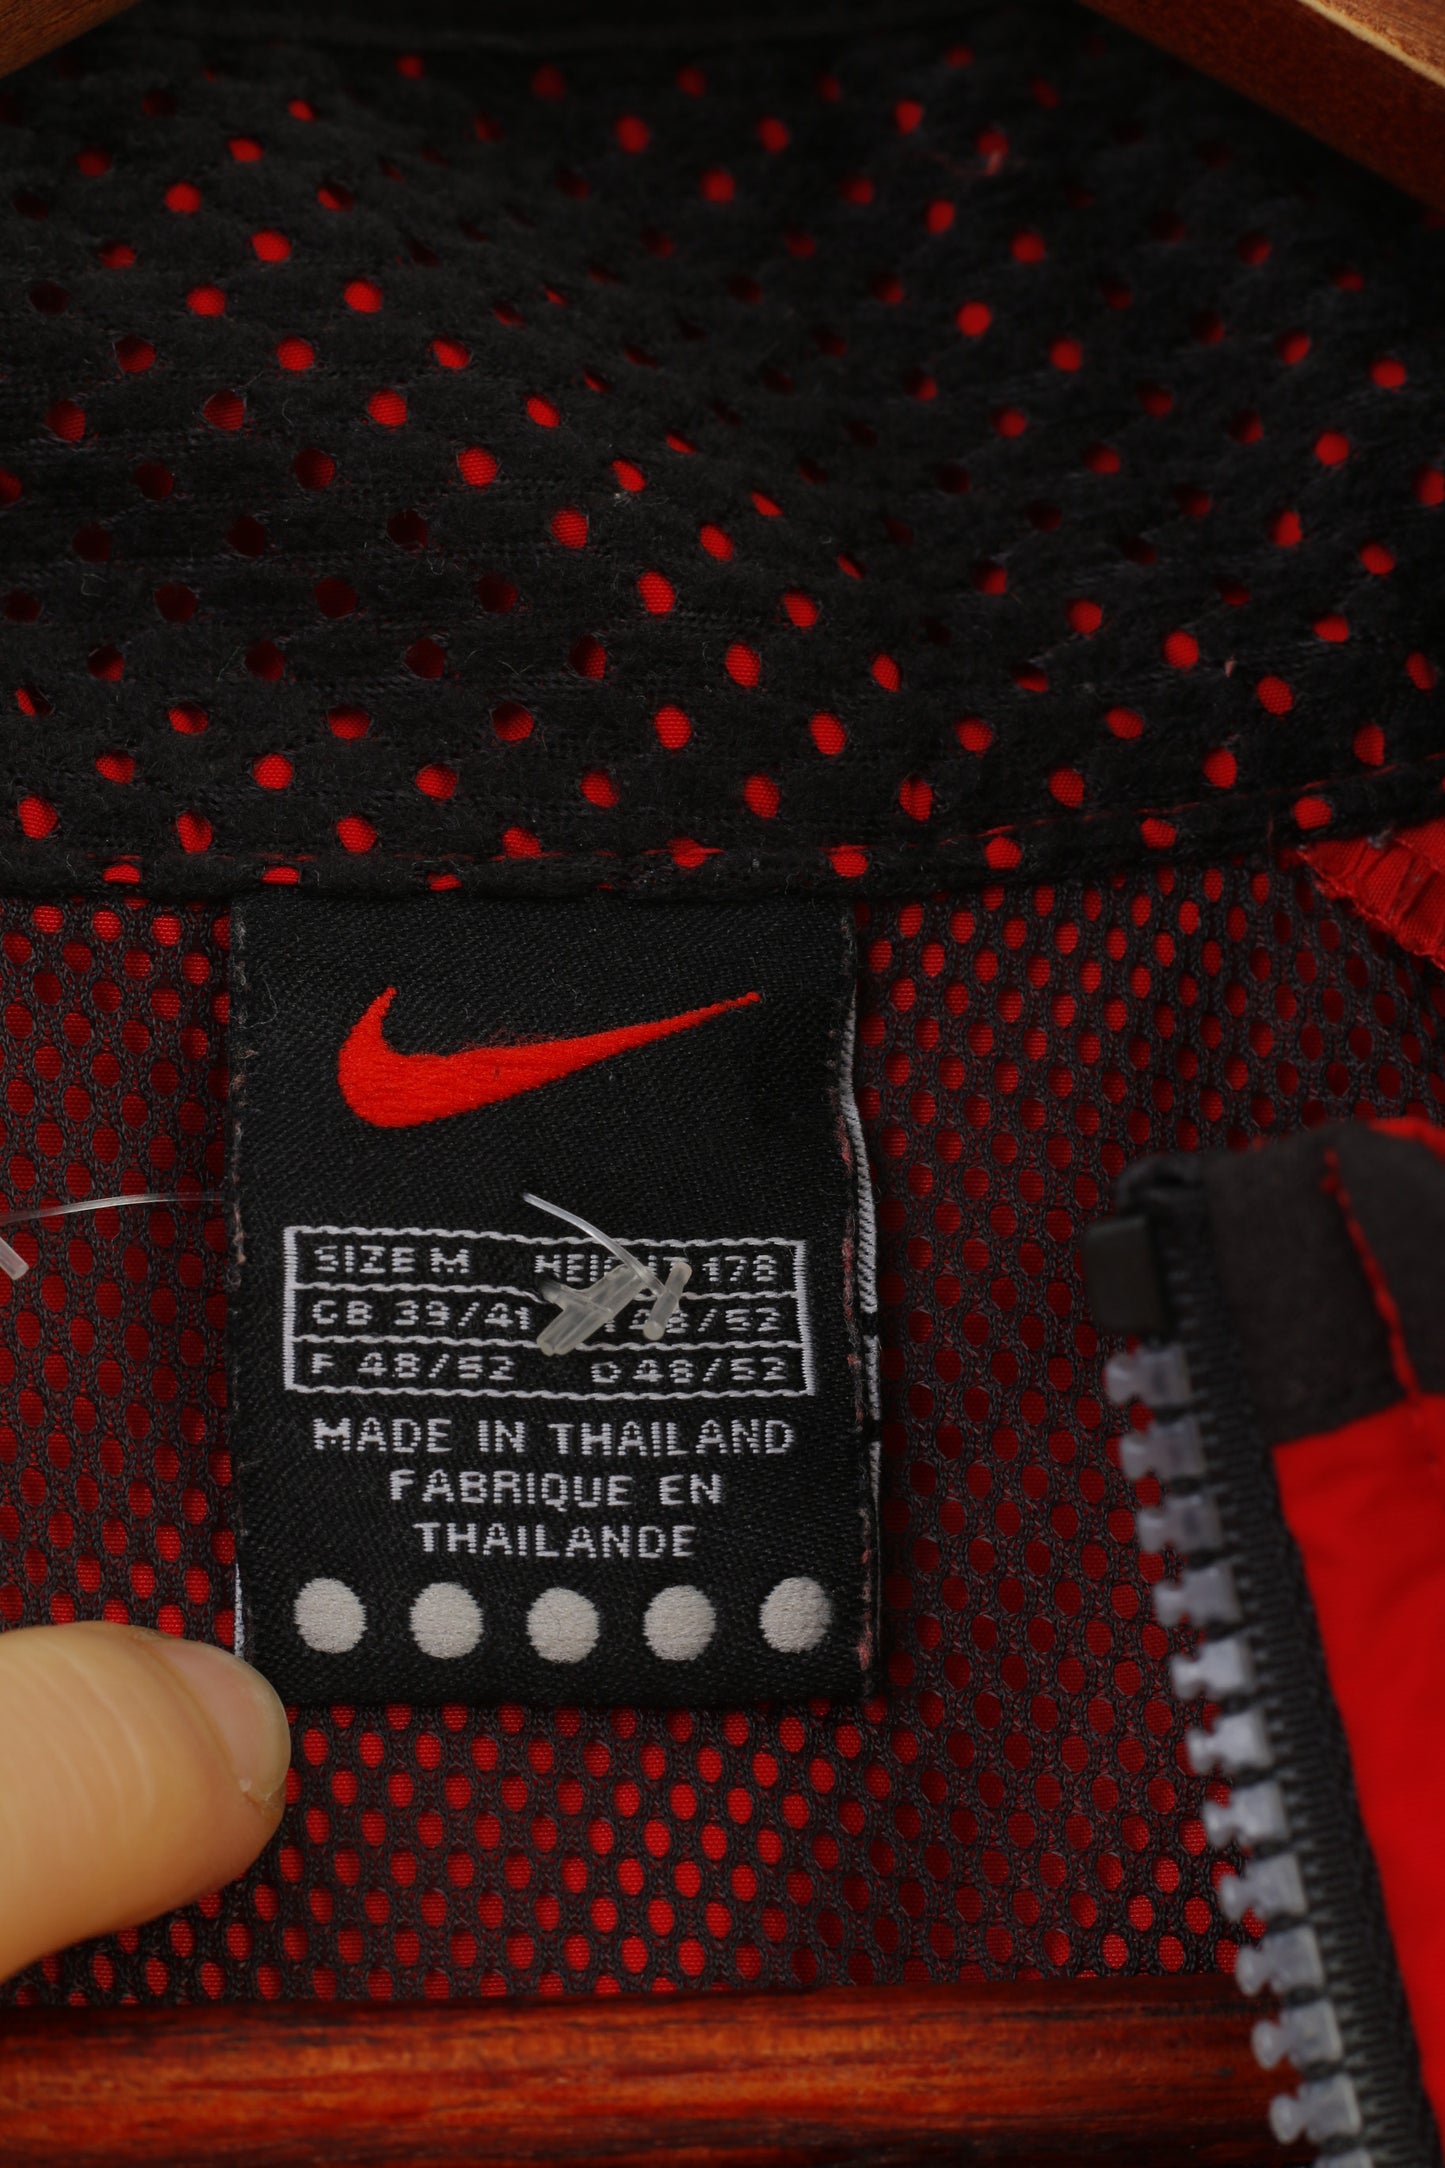 Giacca Nike da uomo 48 L rossa vintage leggera con cerniera intera outwear sportivo